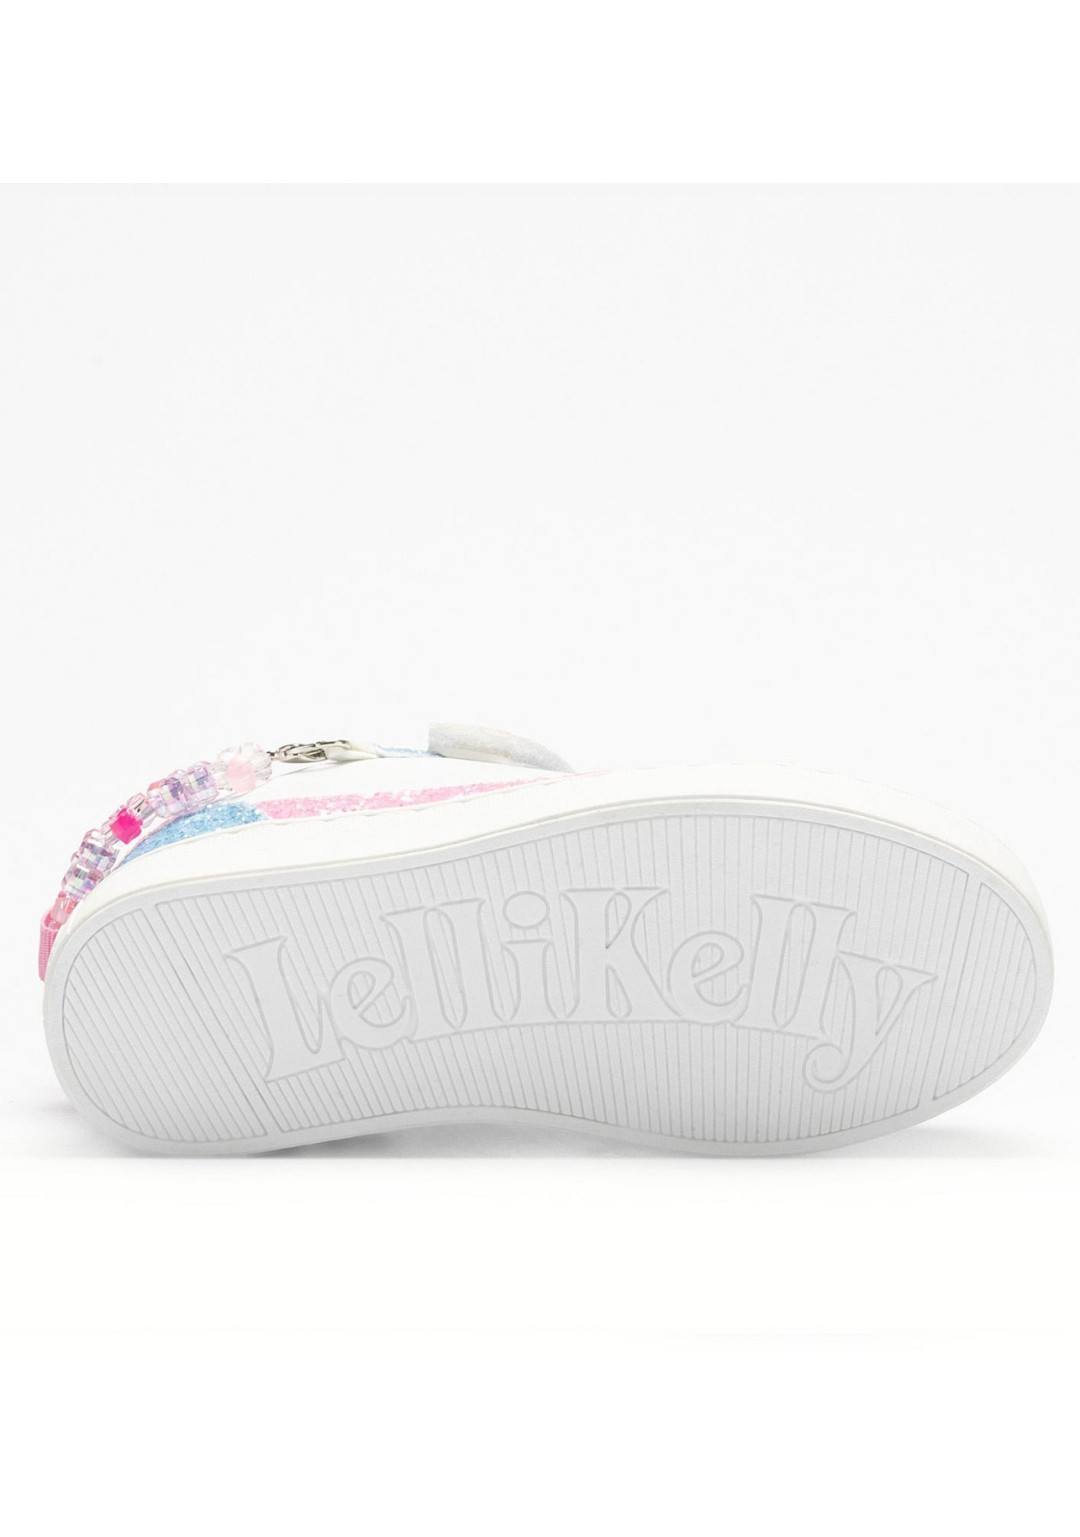 Lelli Kelly - Sneaker bracciale - Bambine e ragazze - LKAA4010